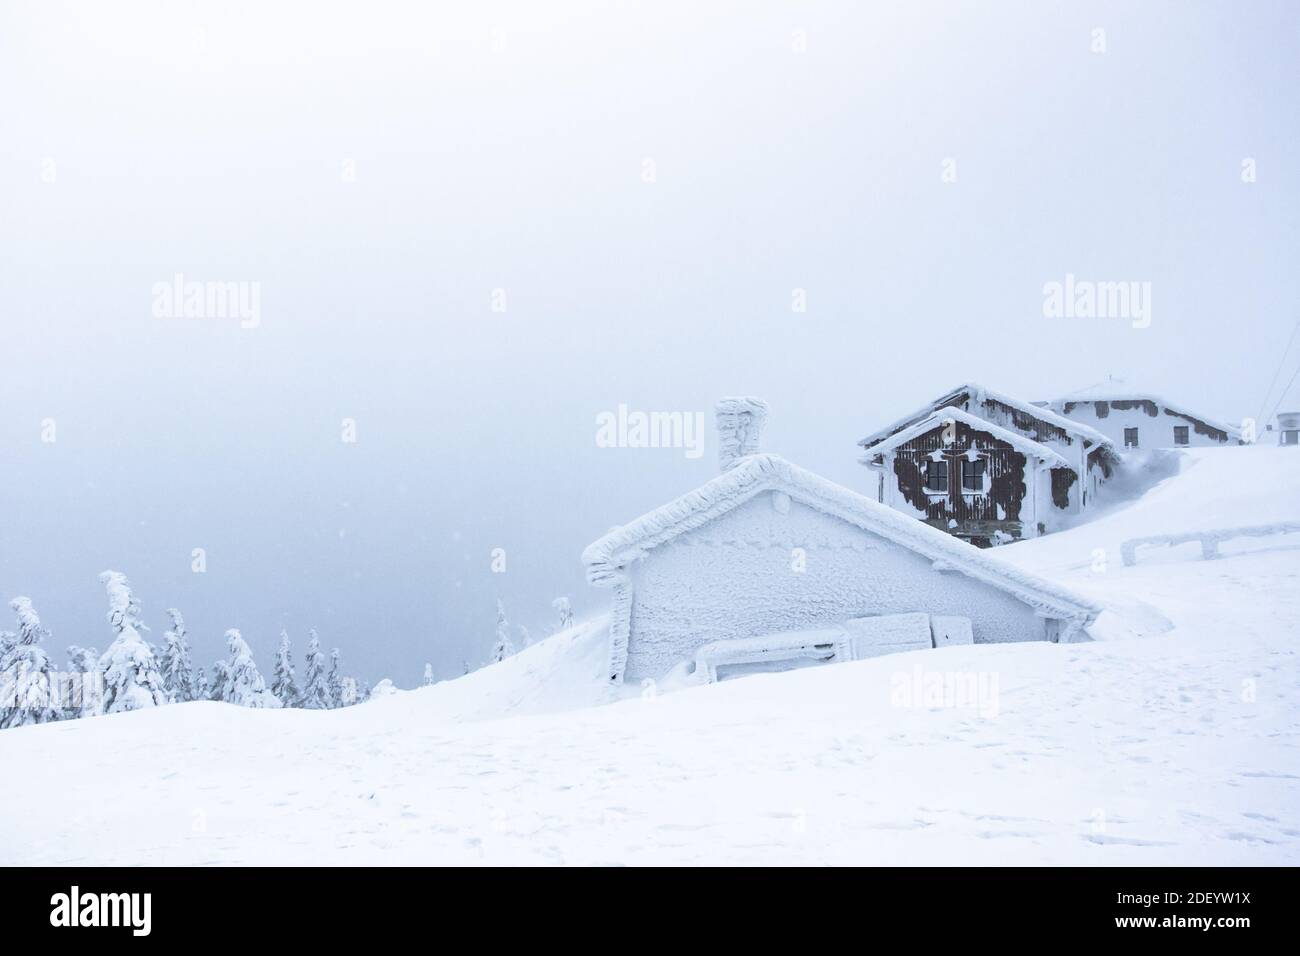 Paysage panoramique d'hiver avec chalet, arbres couverts de neige, brouillard. Arrière-plan d'hiver de neige et de givre.pittoresque et magnifique scène d'hiver.Noël Banque D'Images